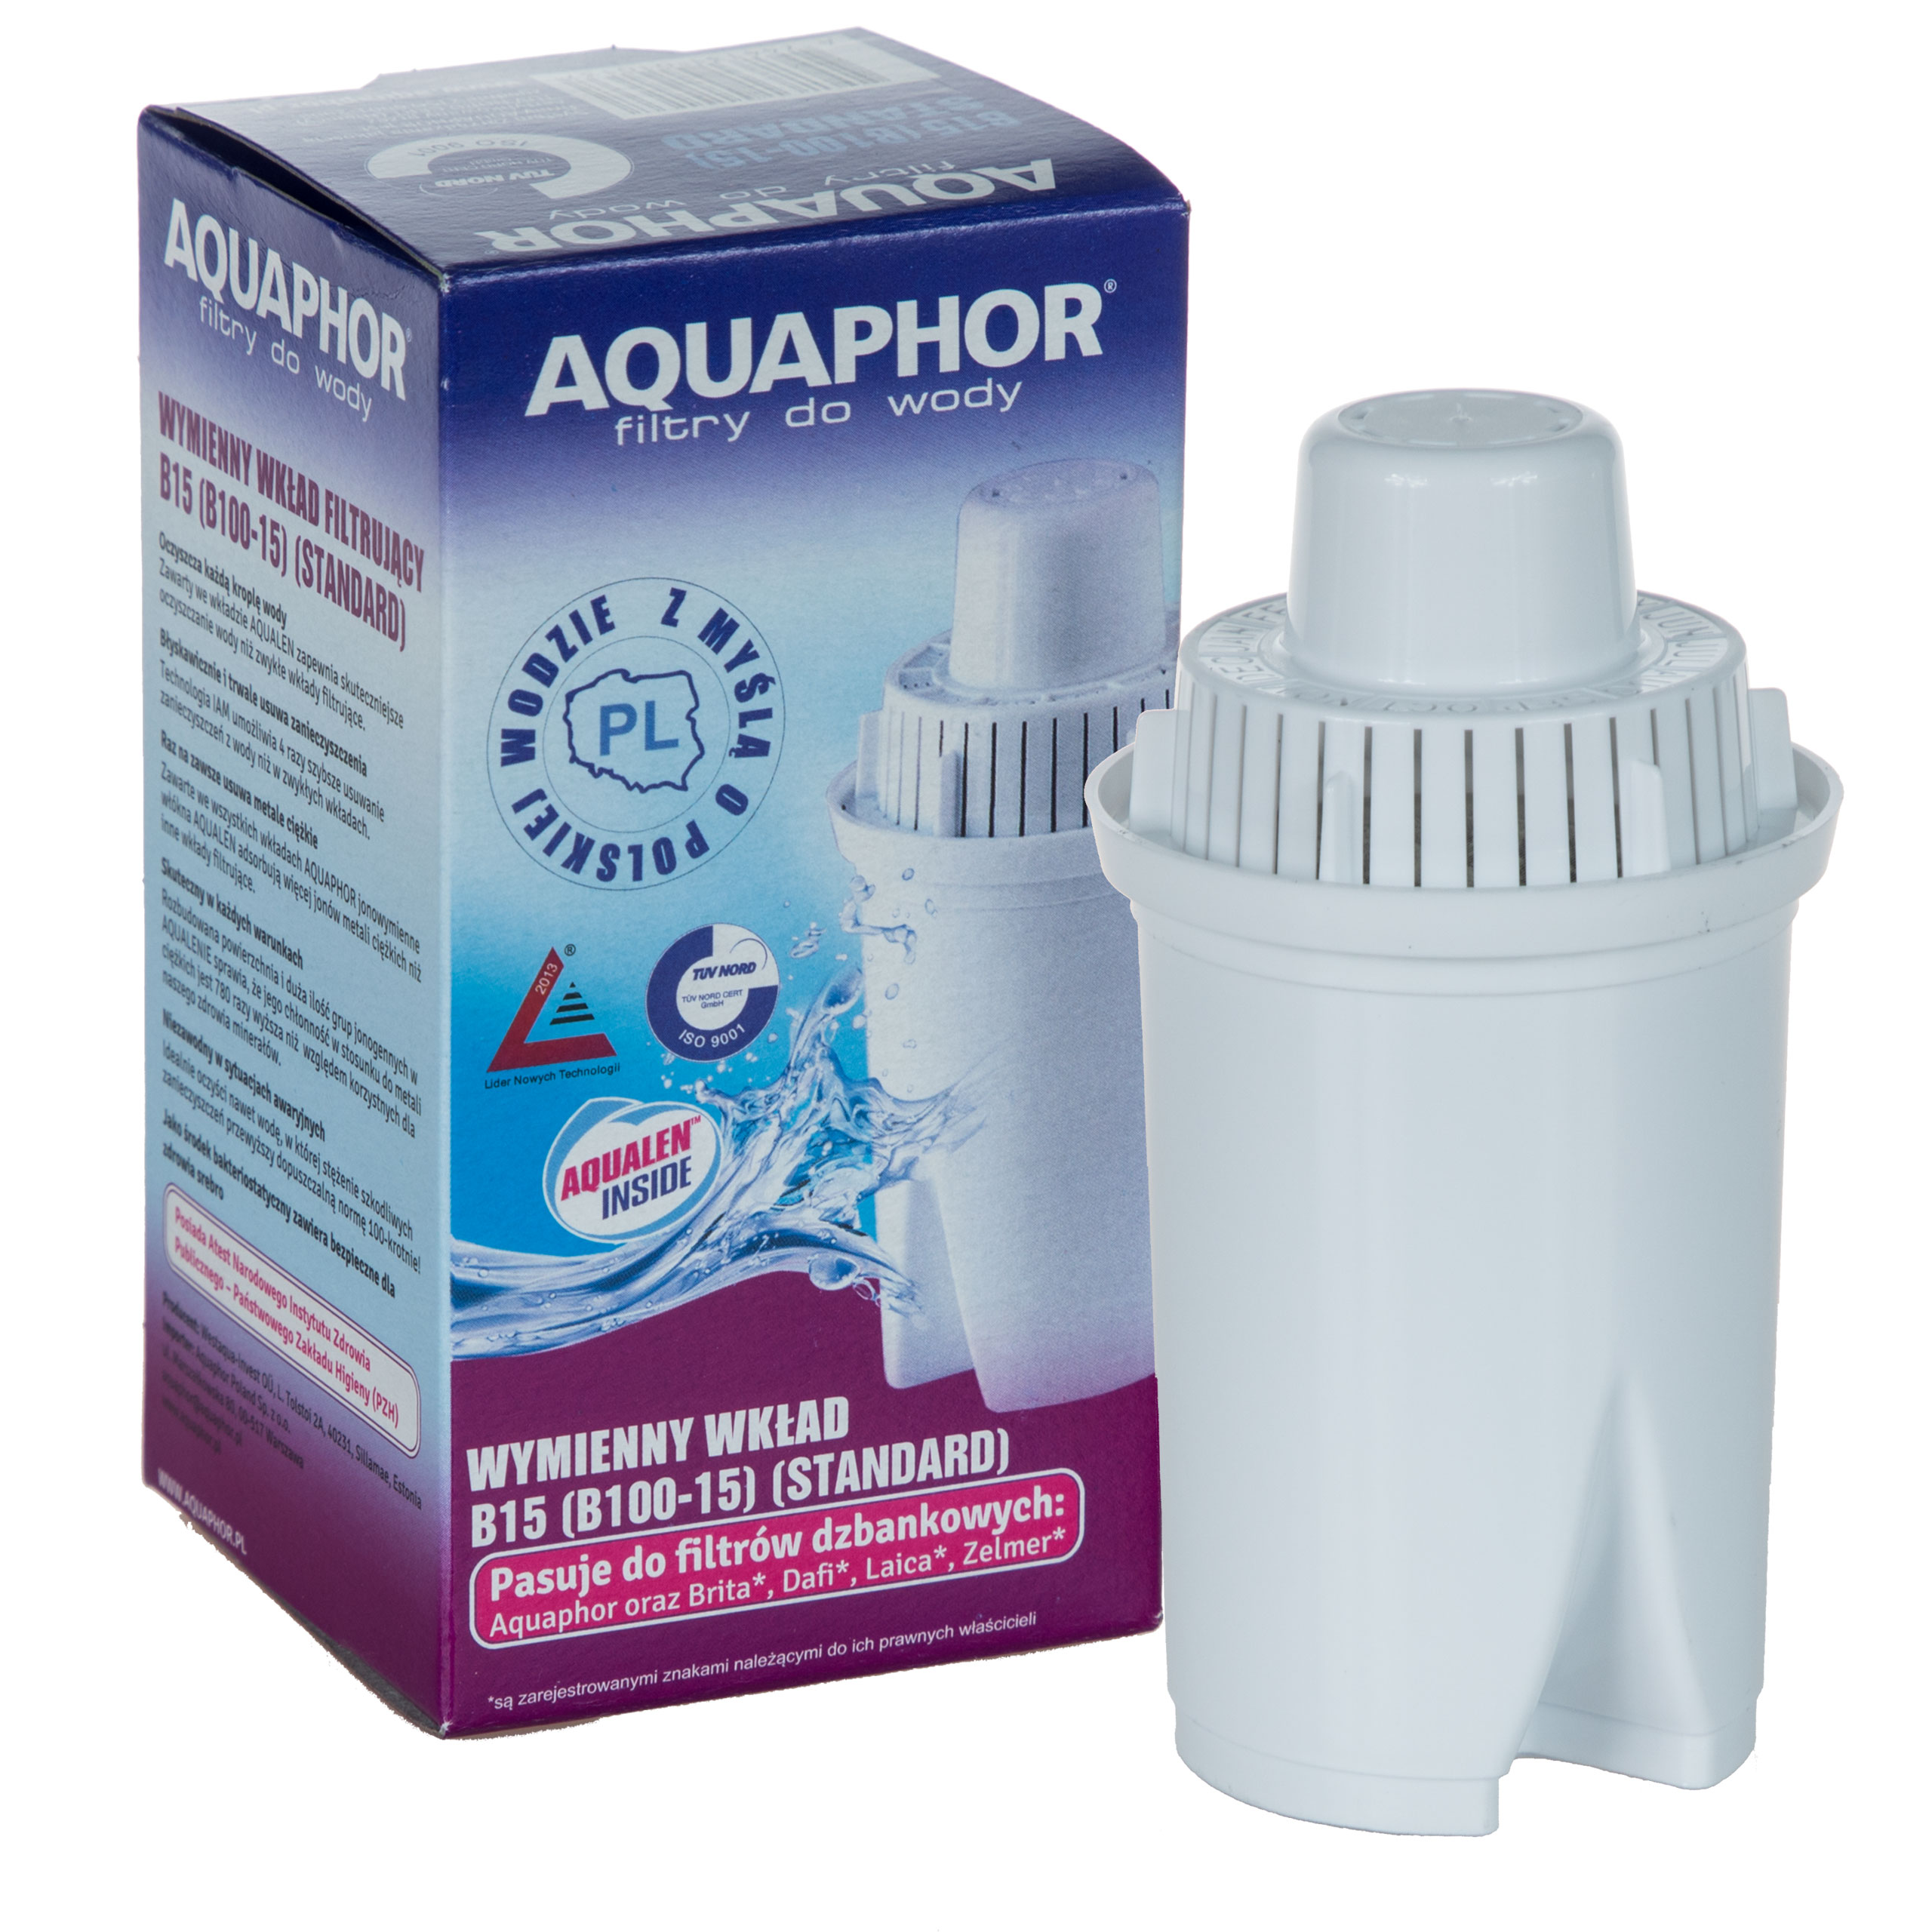 Фильтр для воды аквафор кувшин сменные. Фильтр Аквафор в 100-15. Фильтр для воды Аквафор в100-15. Aquaphor Filter Cartridge b15 (b100-15). Фильтр Аквафор 100.